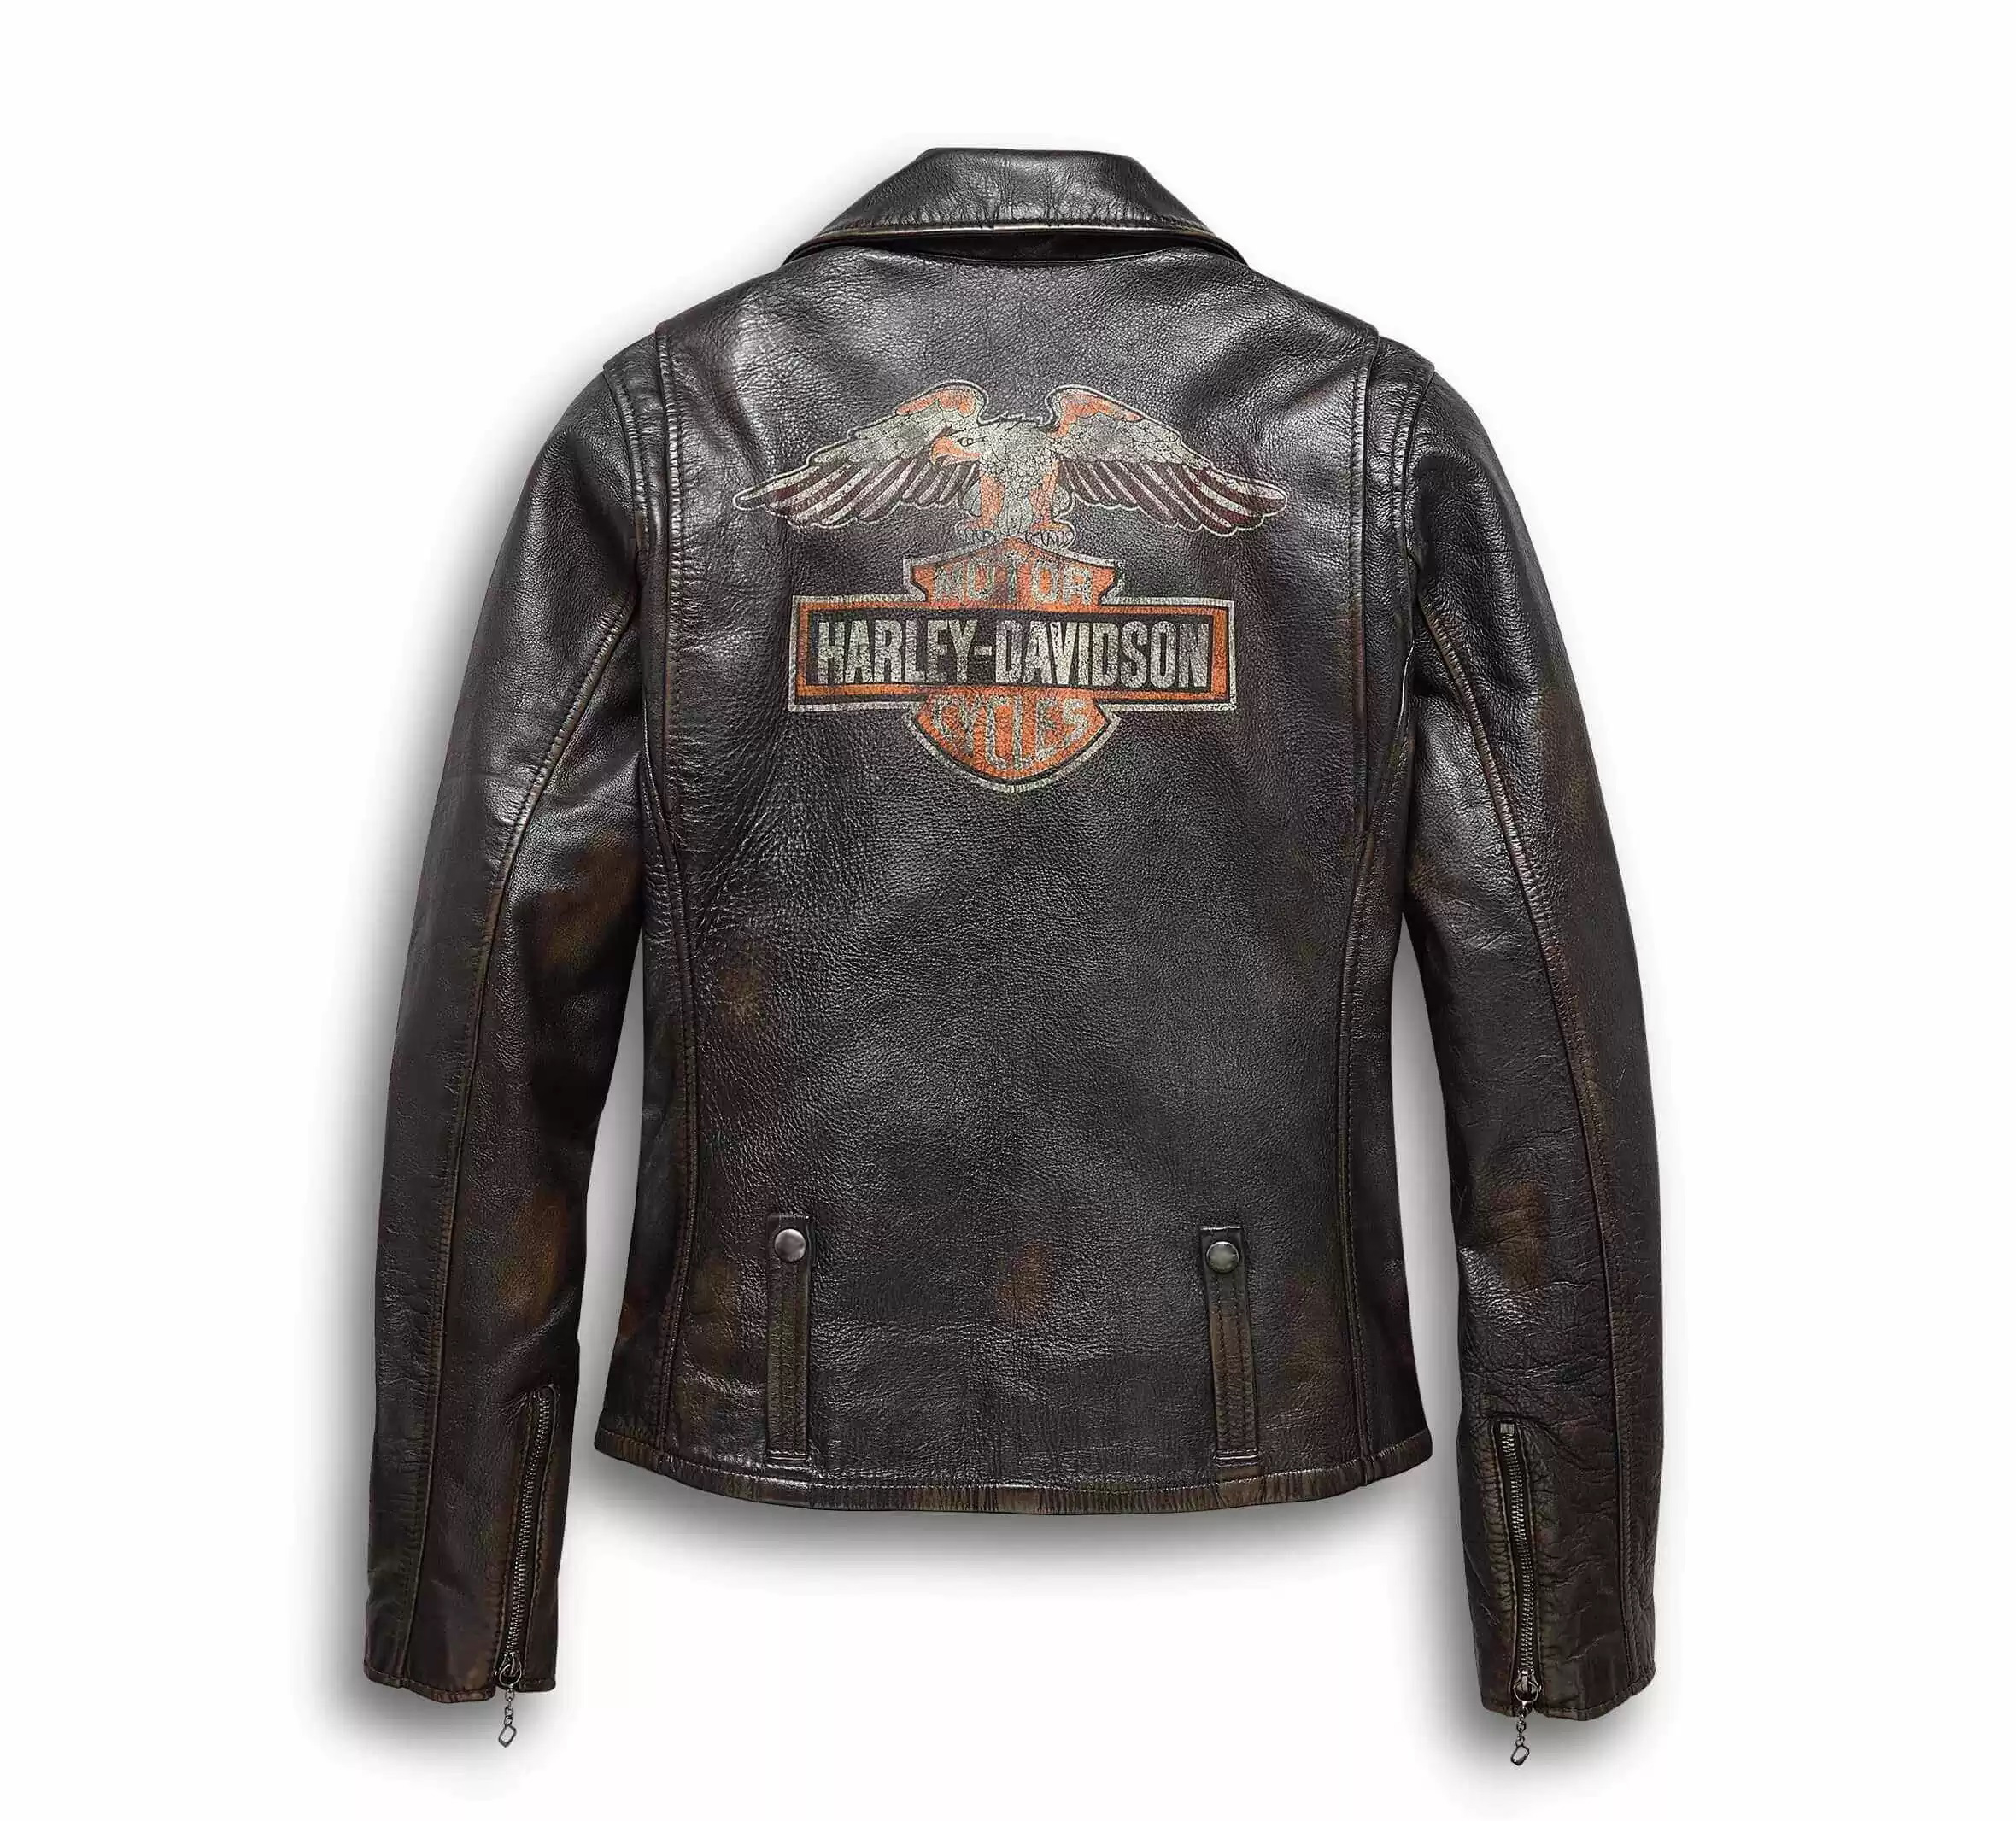 Harley Davidson Eagle Distressed Leather Biker Jacket - Maker of Jacket